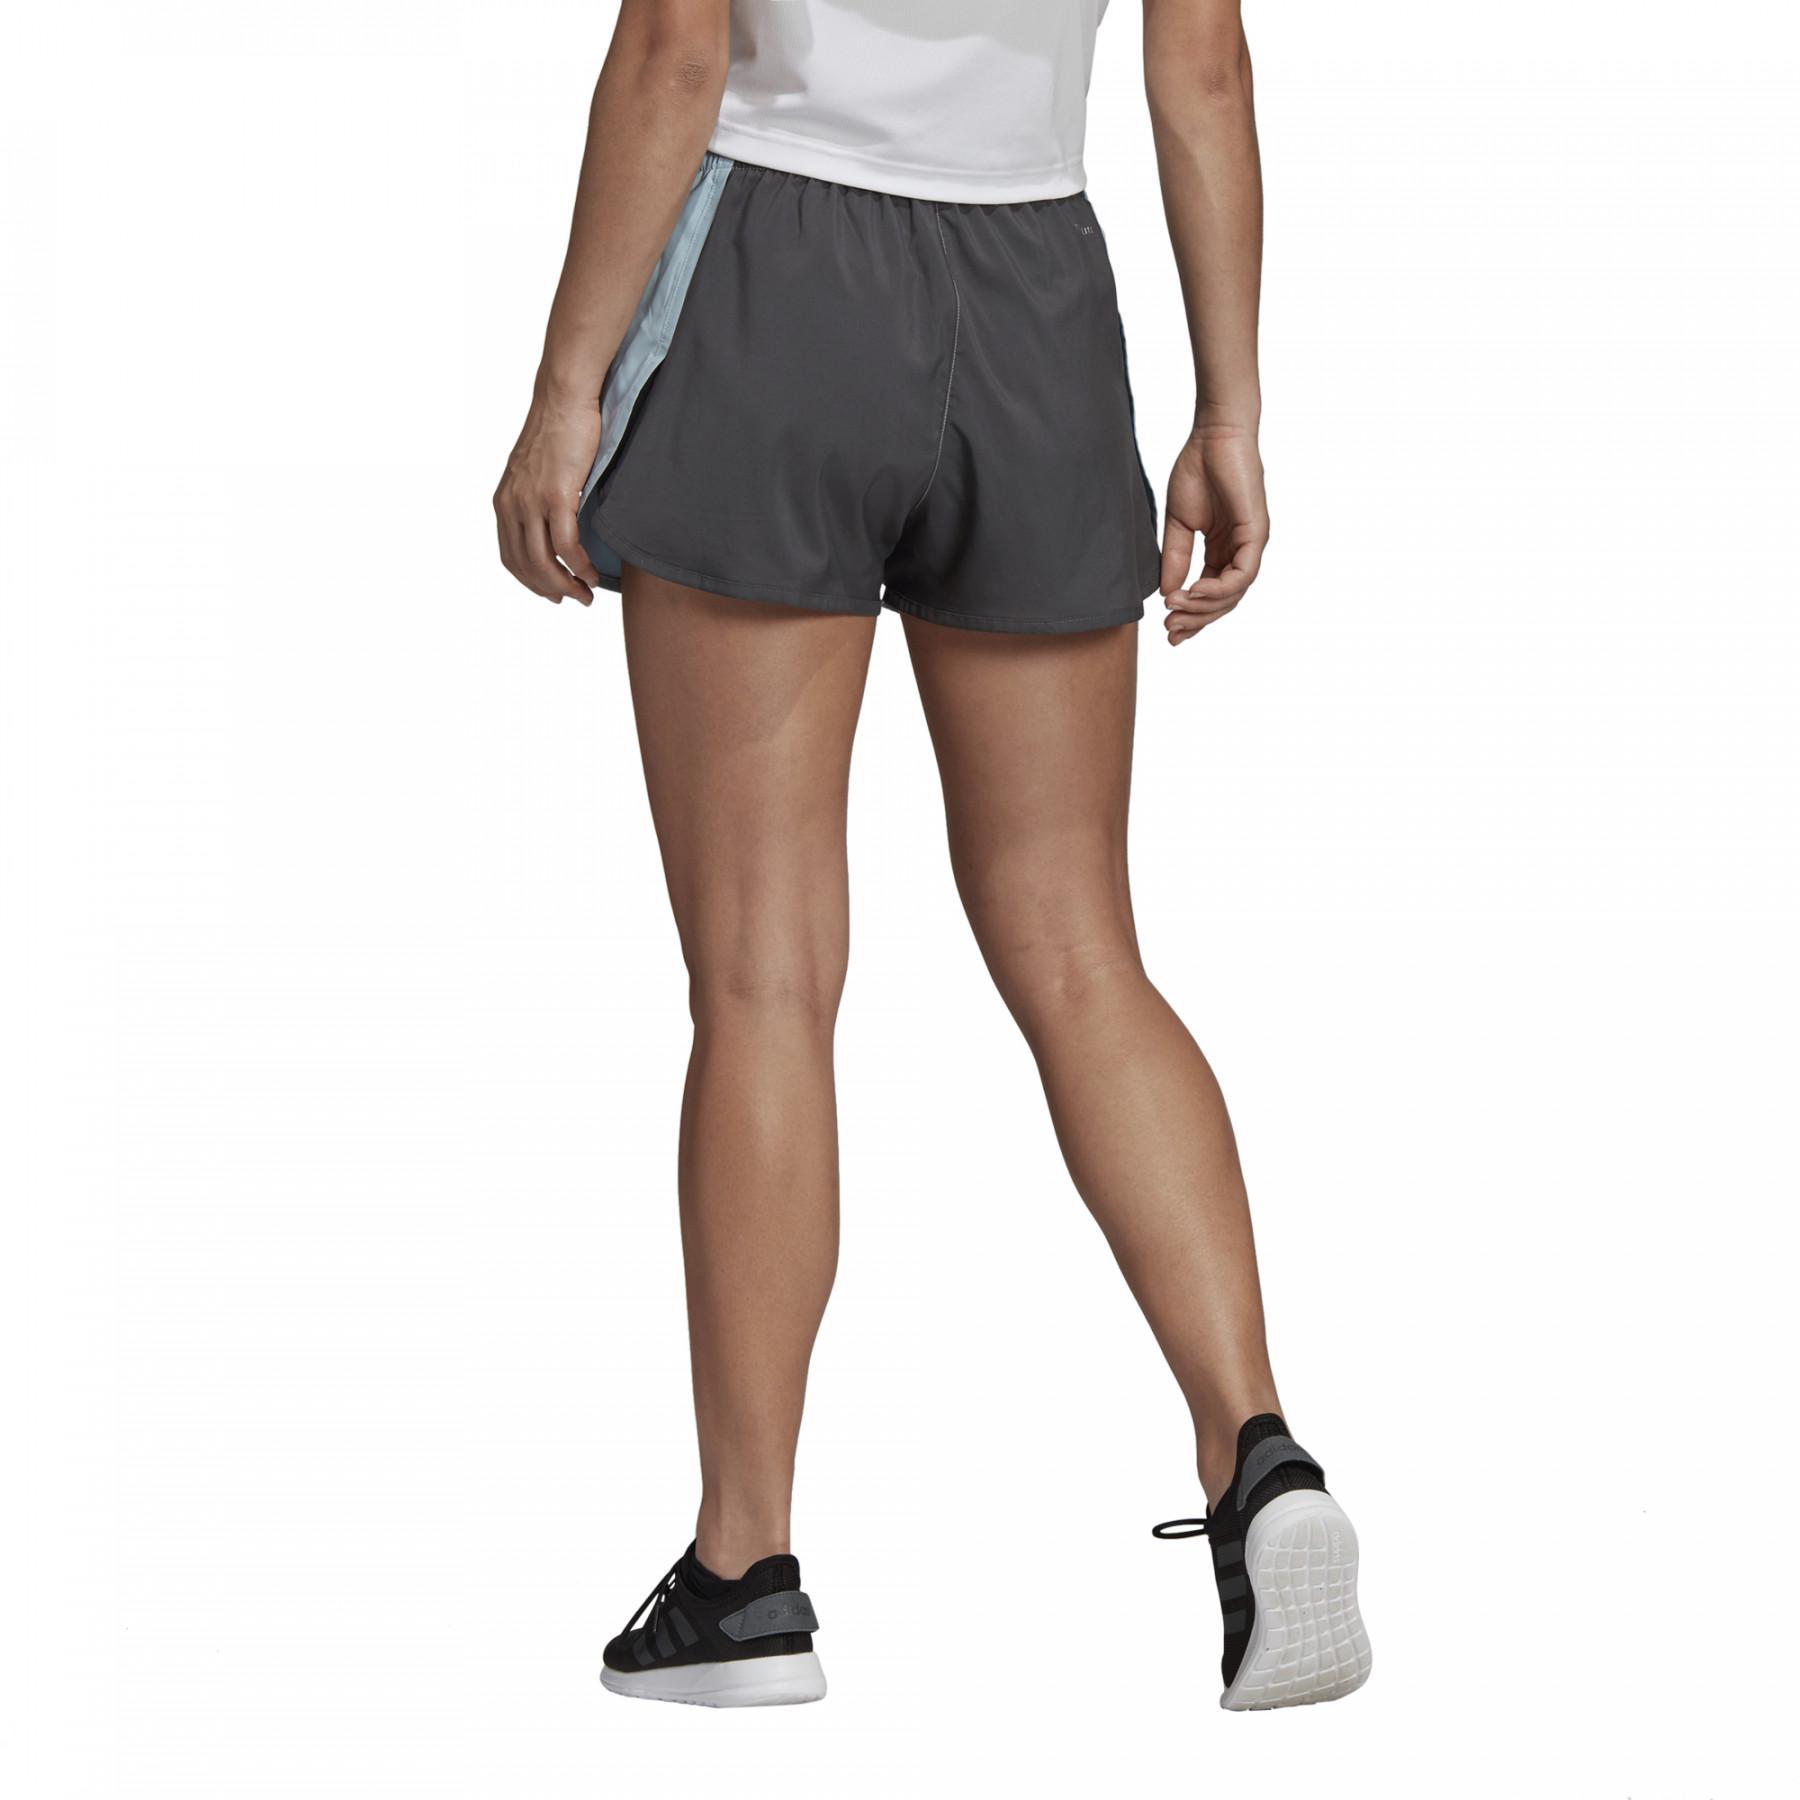 Damen-Shorts adidas Design 2 Move